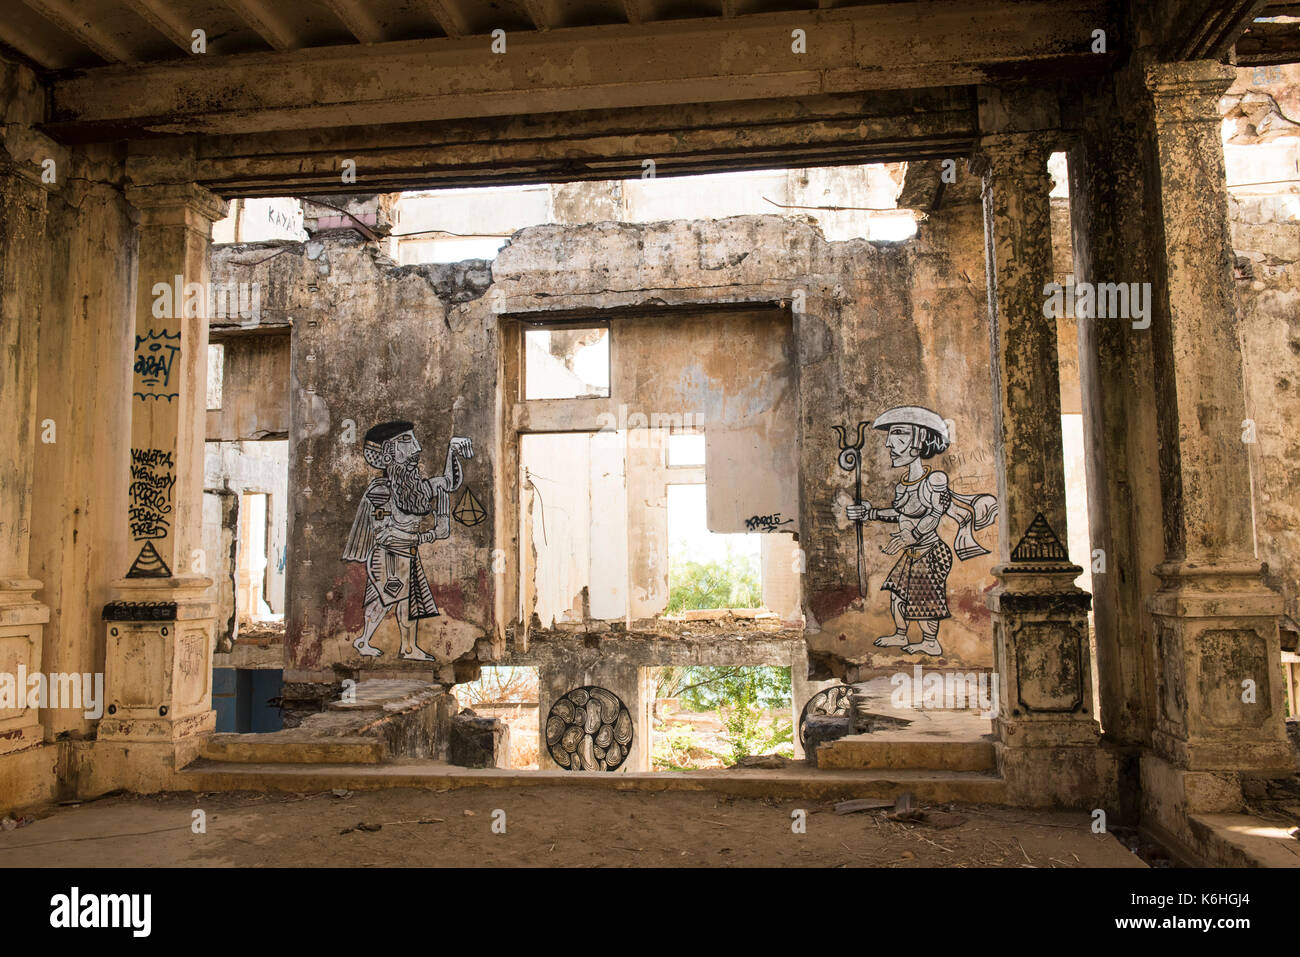 Ruines d'un bâtiment colonial français, Antsiranana, Diego Suarez, Madagascar Banque D'Images